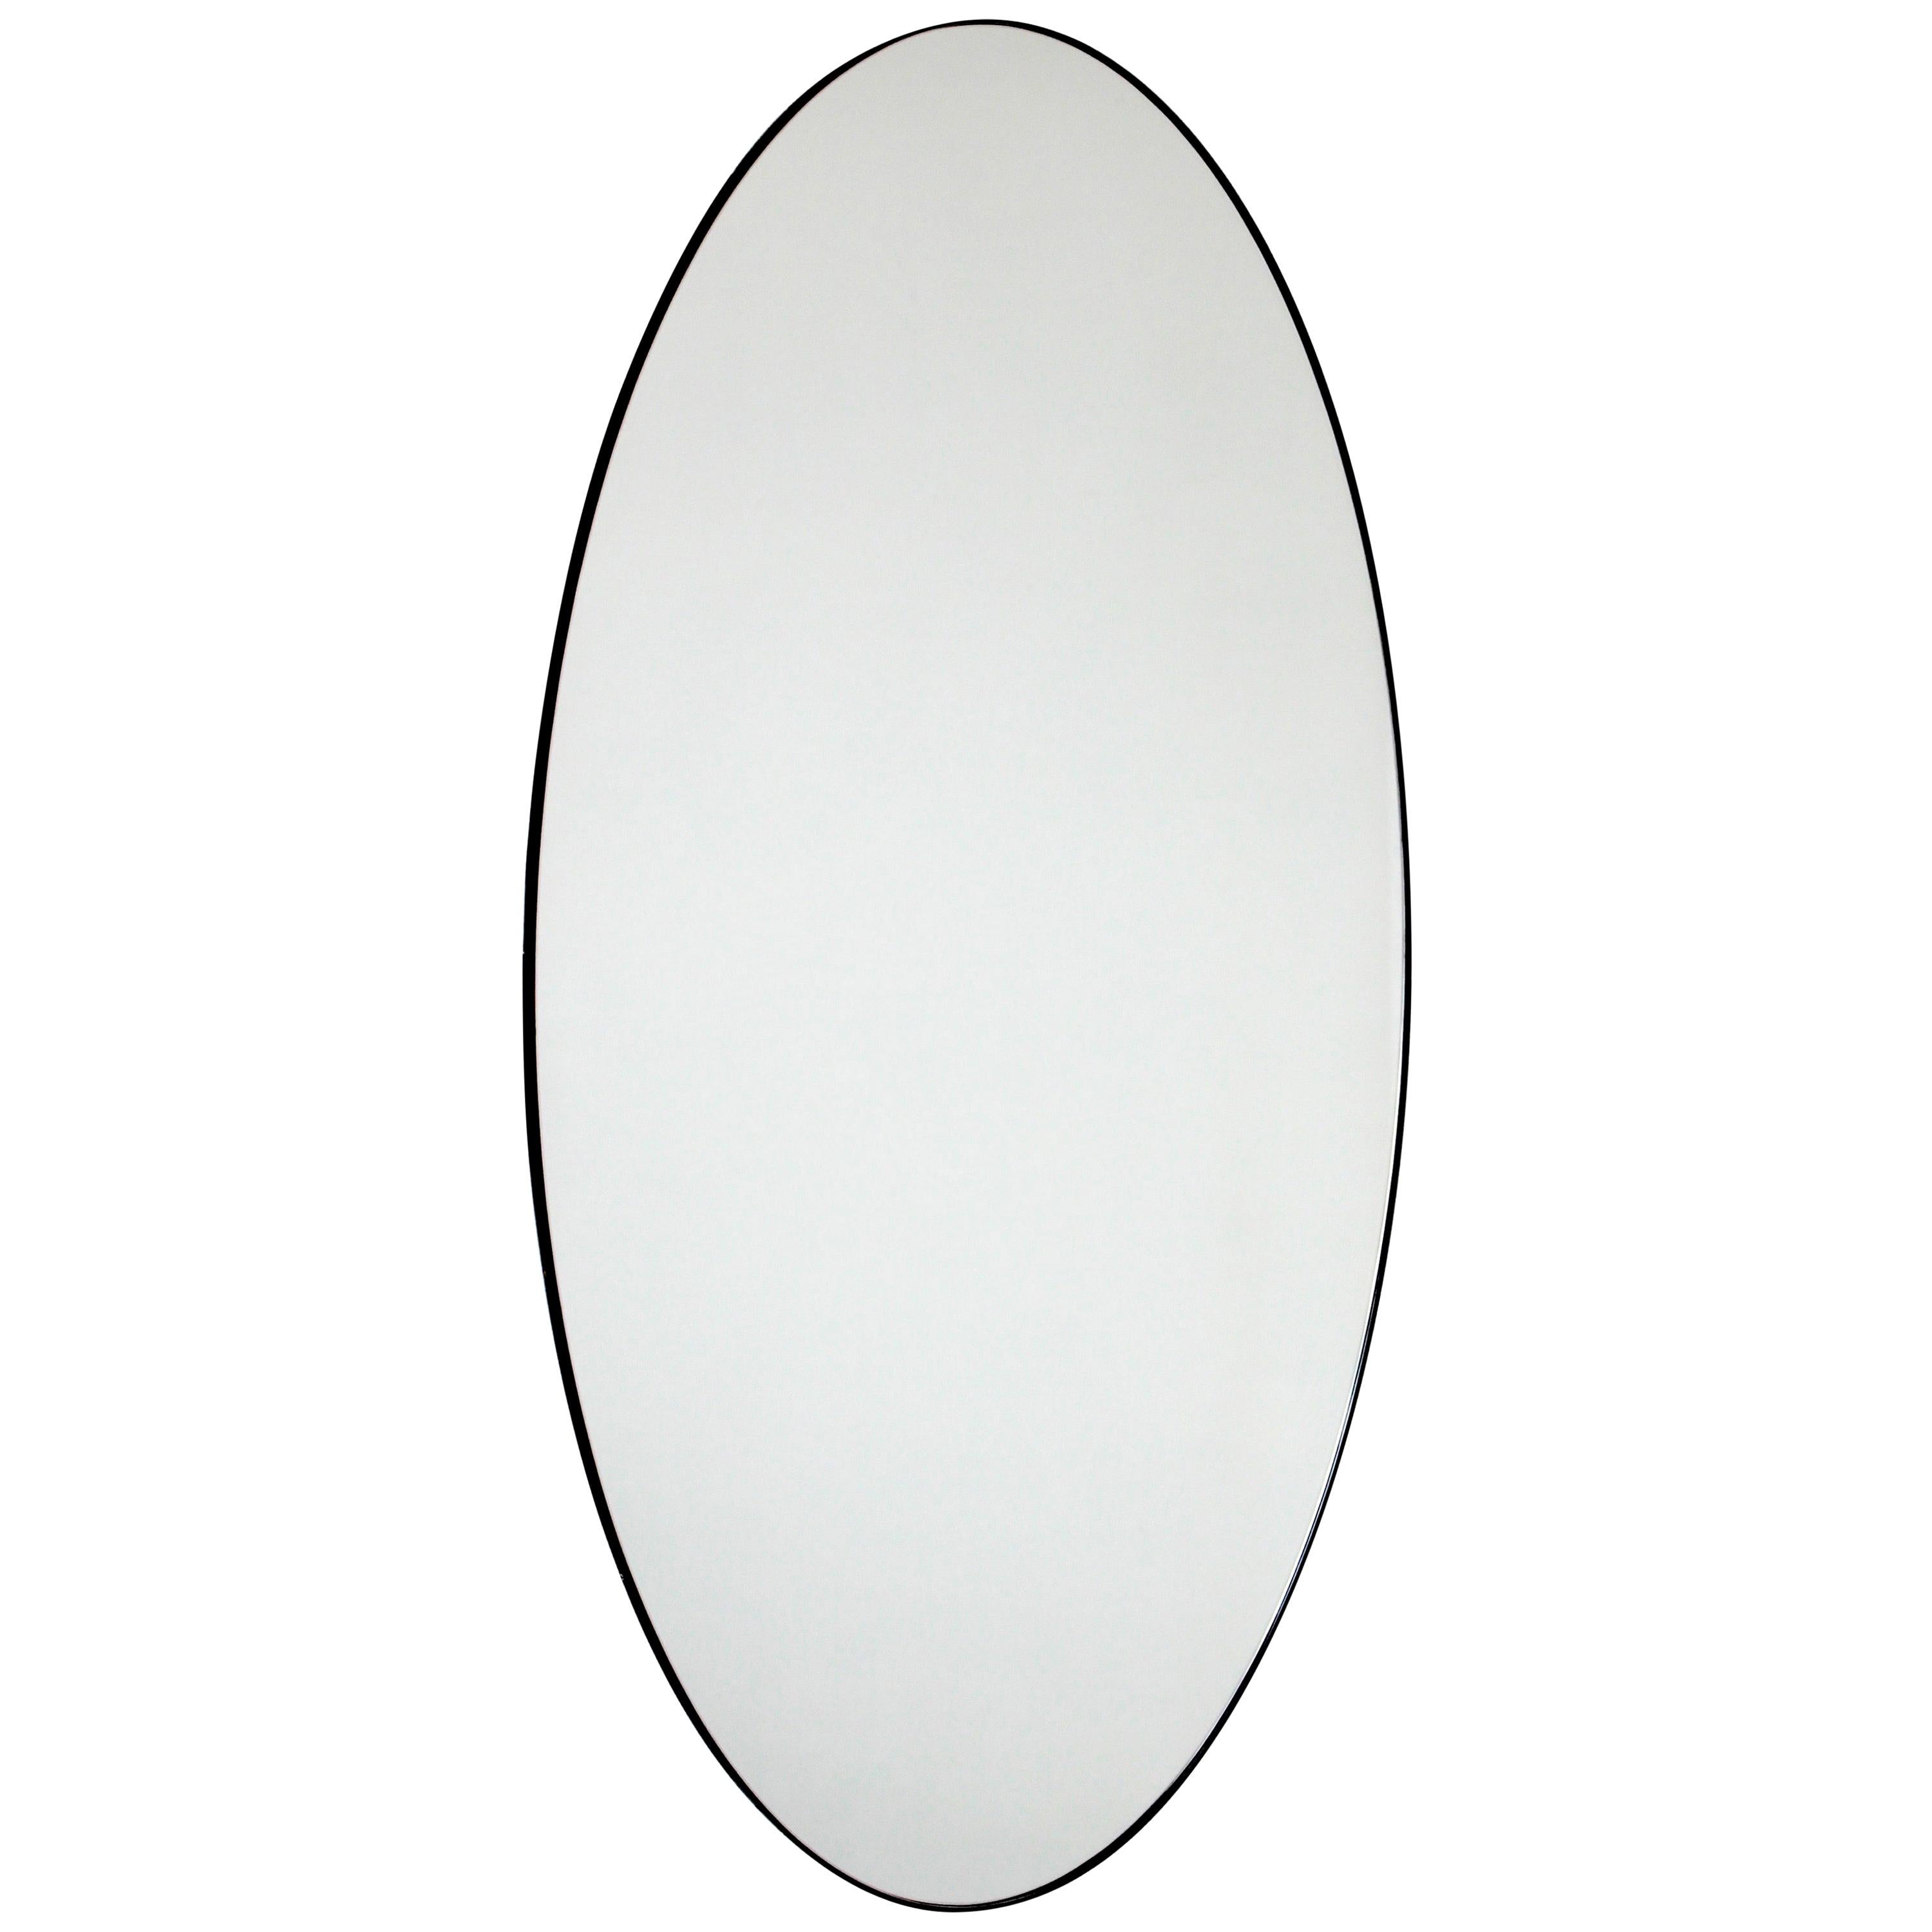 Ovalis Oval Minimalist Customisable Mirror with Elegant Black Frame, Large